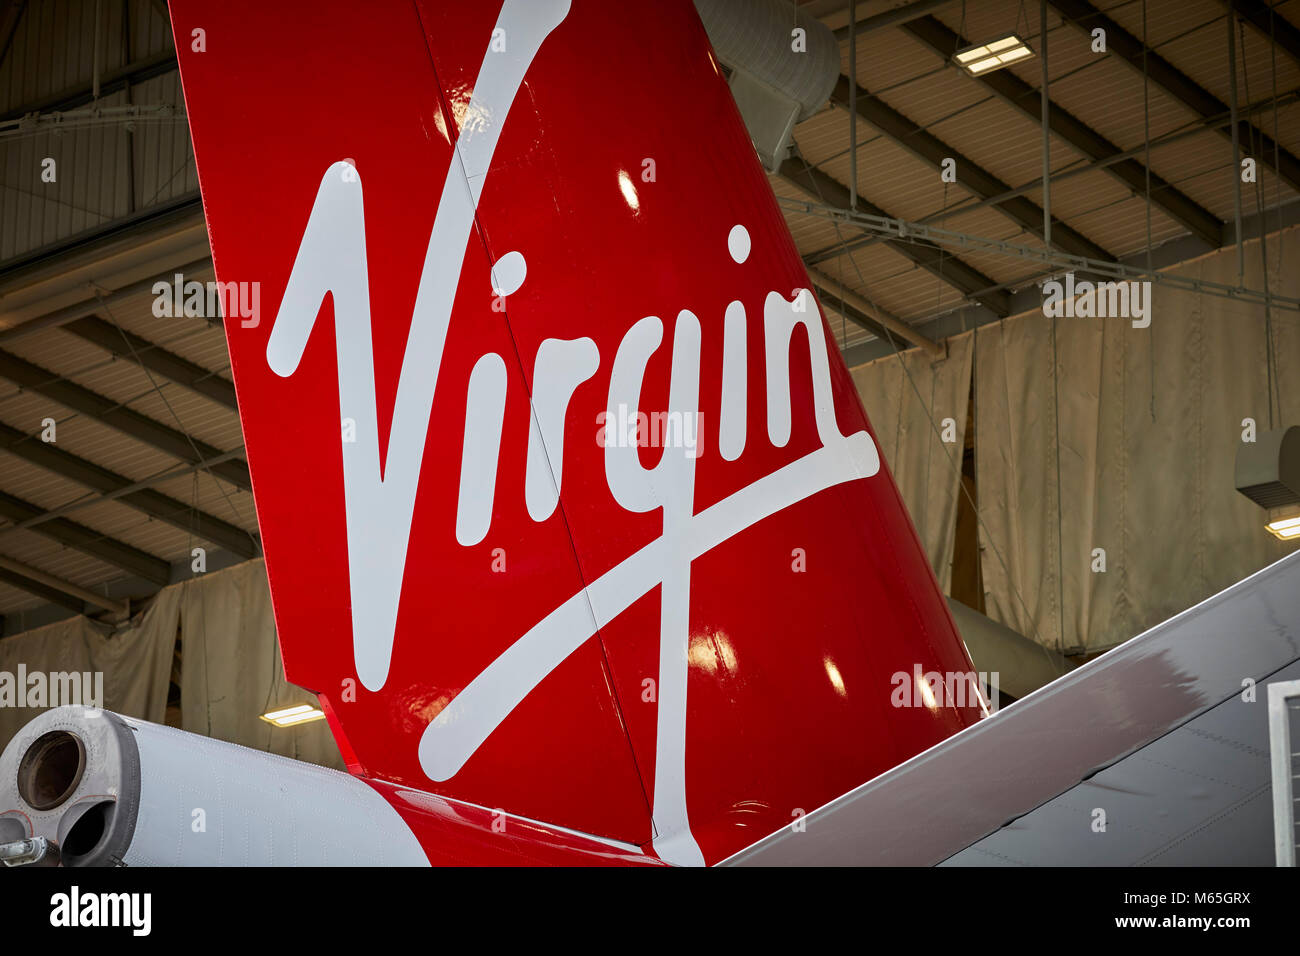 L'aéroport de Manchester Virgin Atlantic queue Airbus 340 Banque D'Images